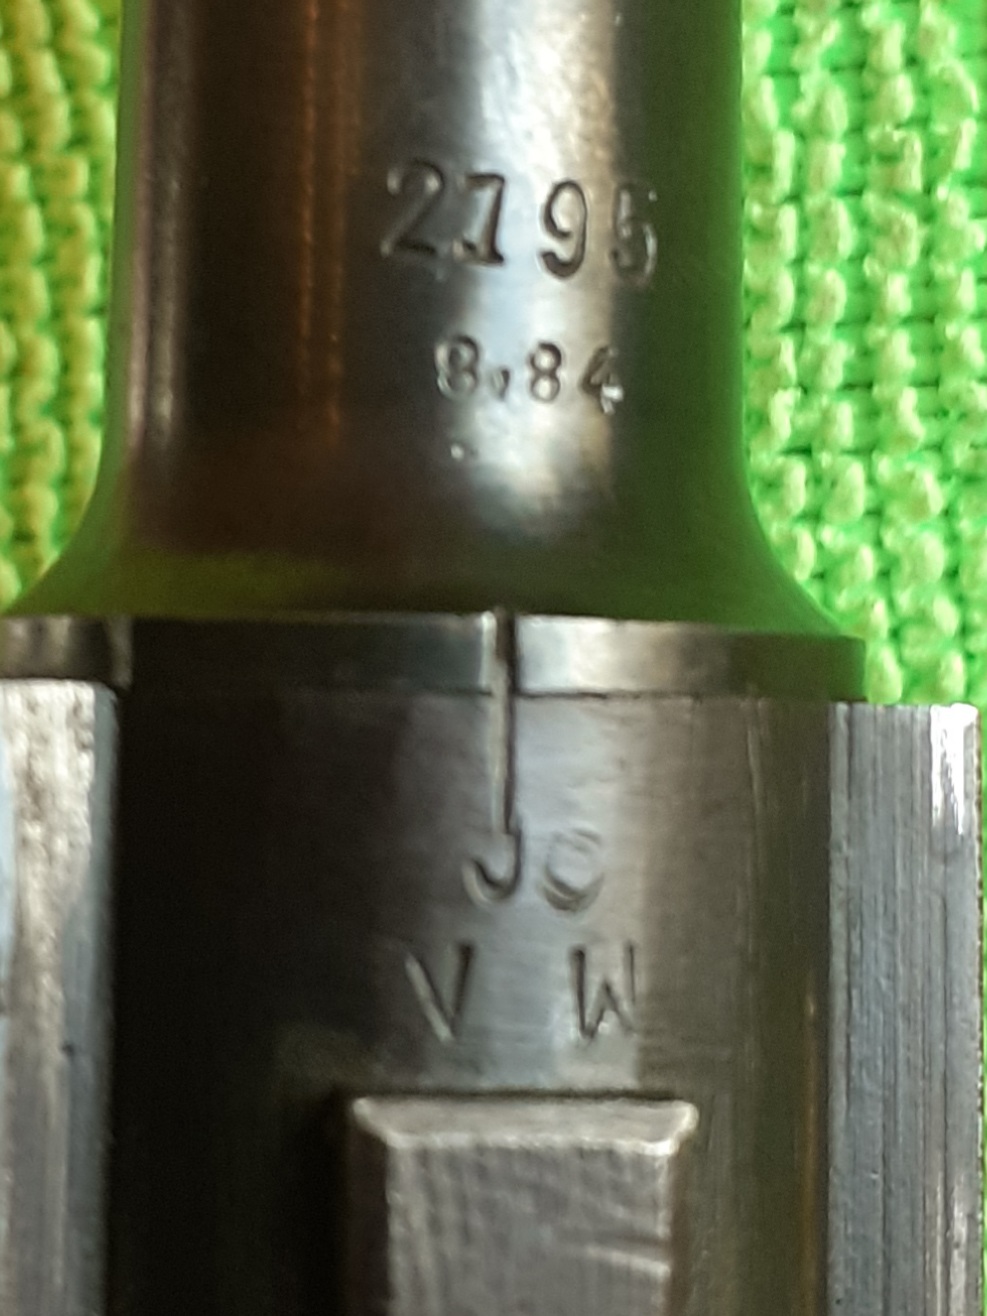 Recherche d'un luger P08 Mauser période Seconde Guerre Mondiale - Page 4 20220318